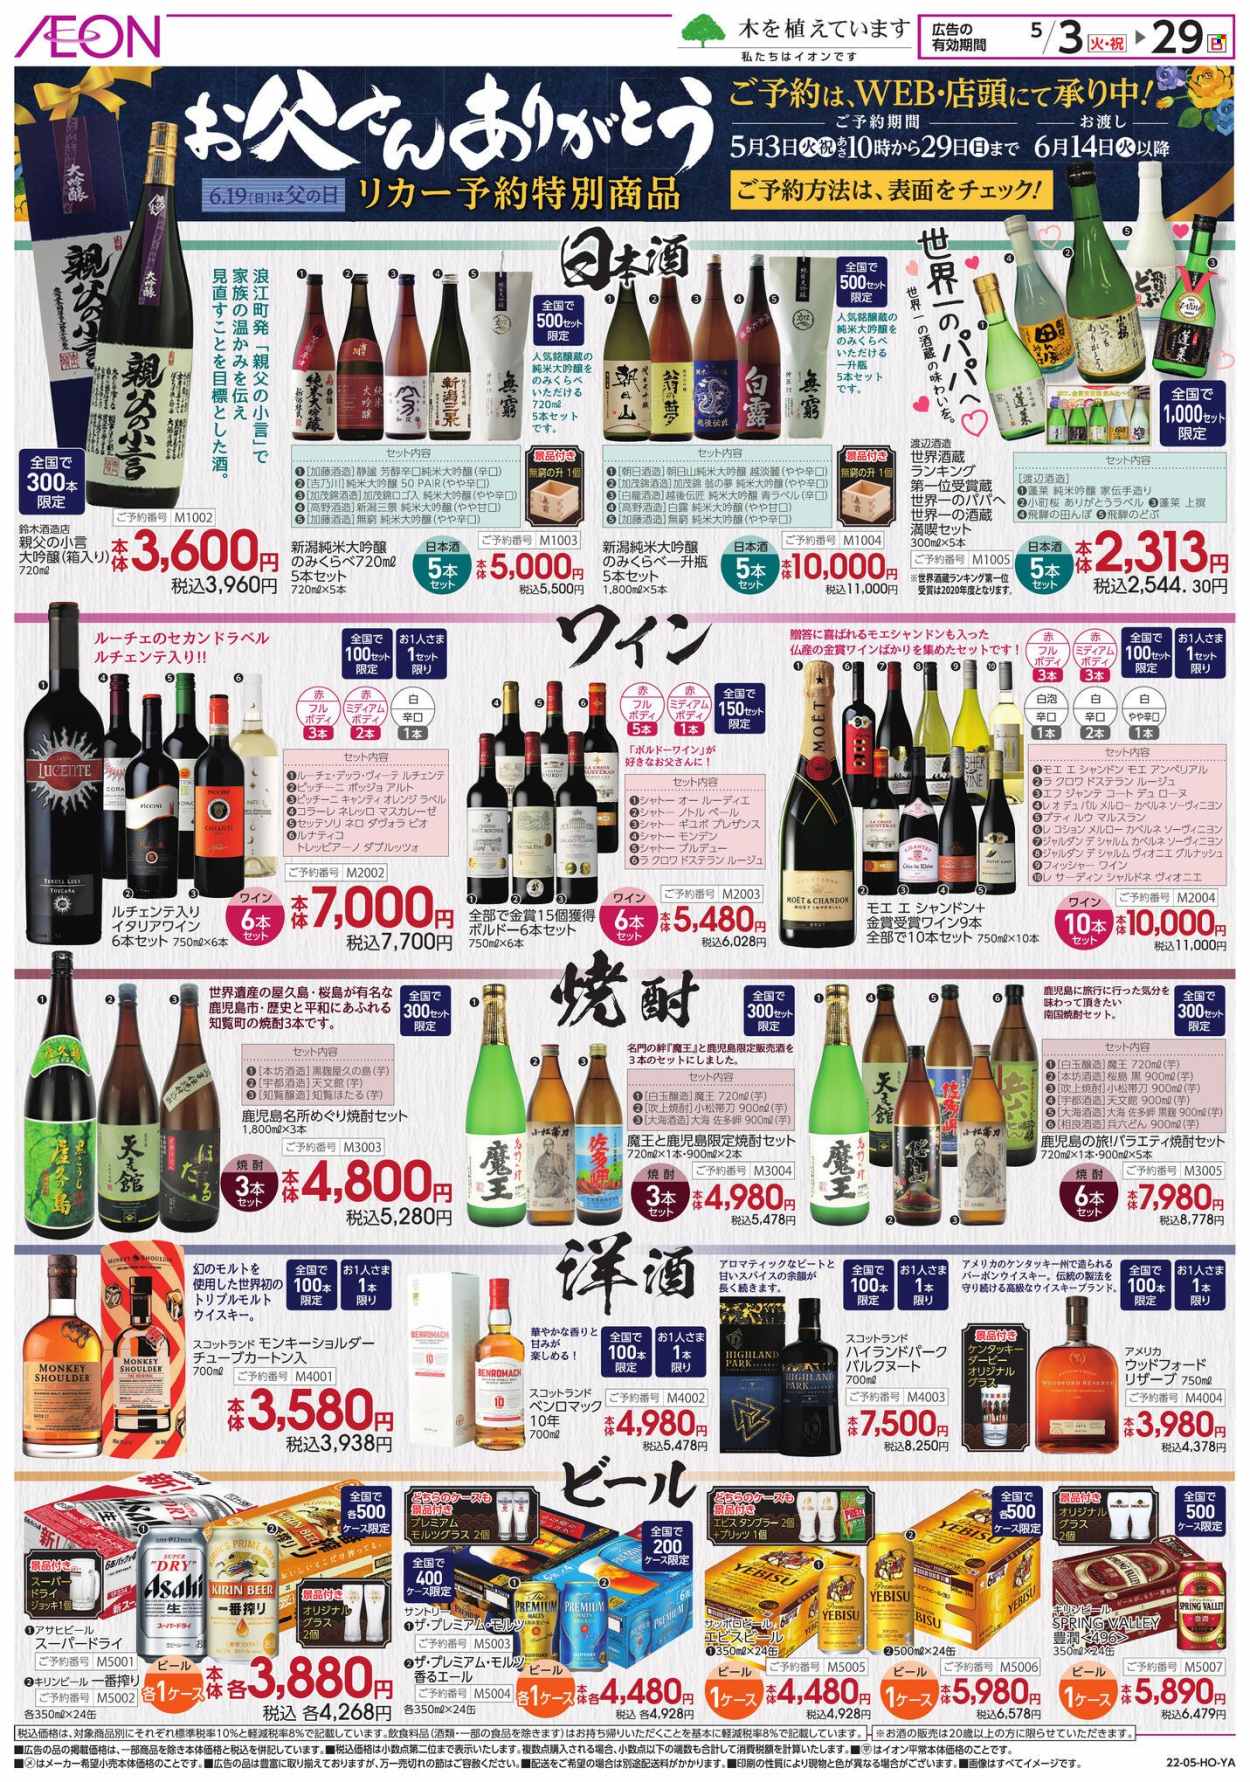 thumbnail - イオンチラシ - 2022年5月3日 - 2022年5月29日 - セール製品 - お酒, きのこ, ビール, ふき, スーパードライ, 米。ページ2。